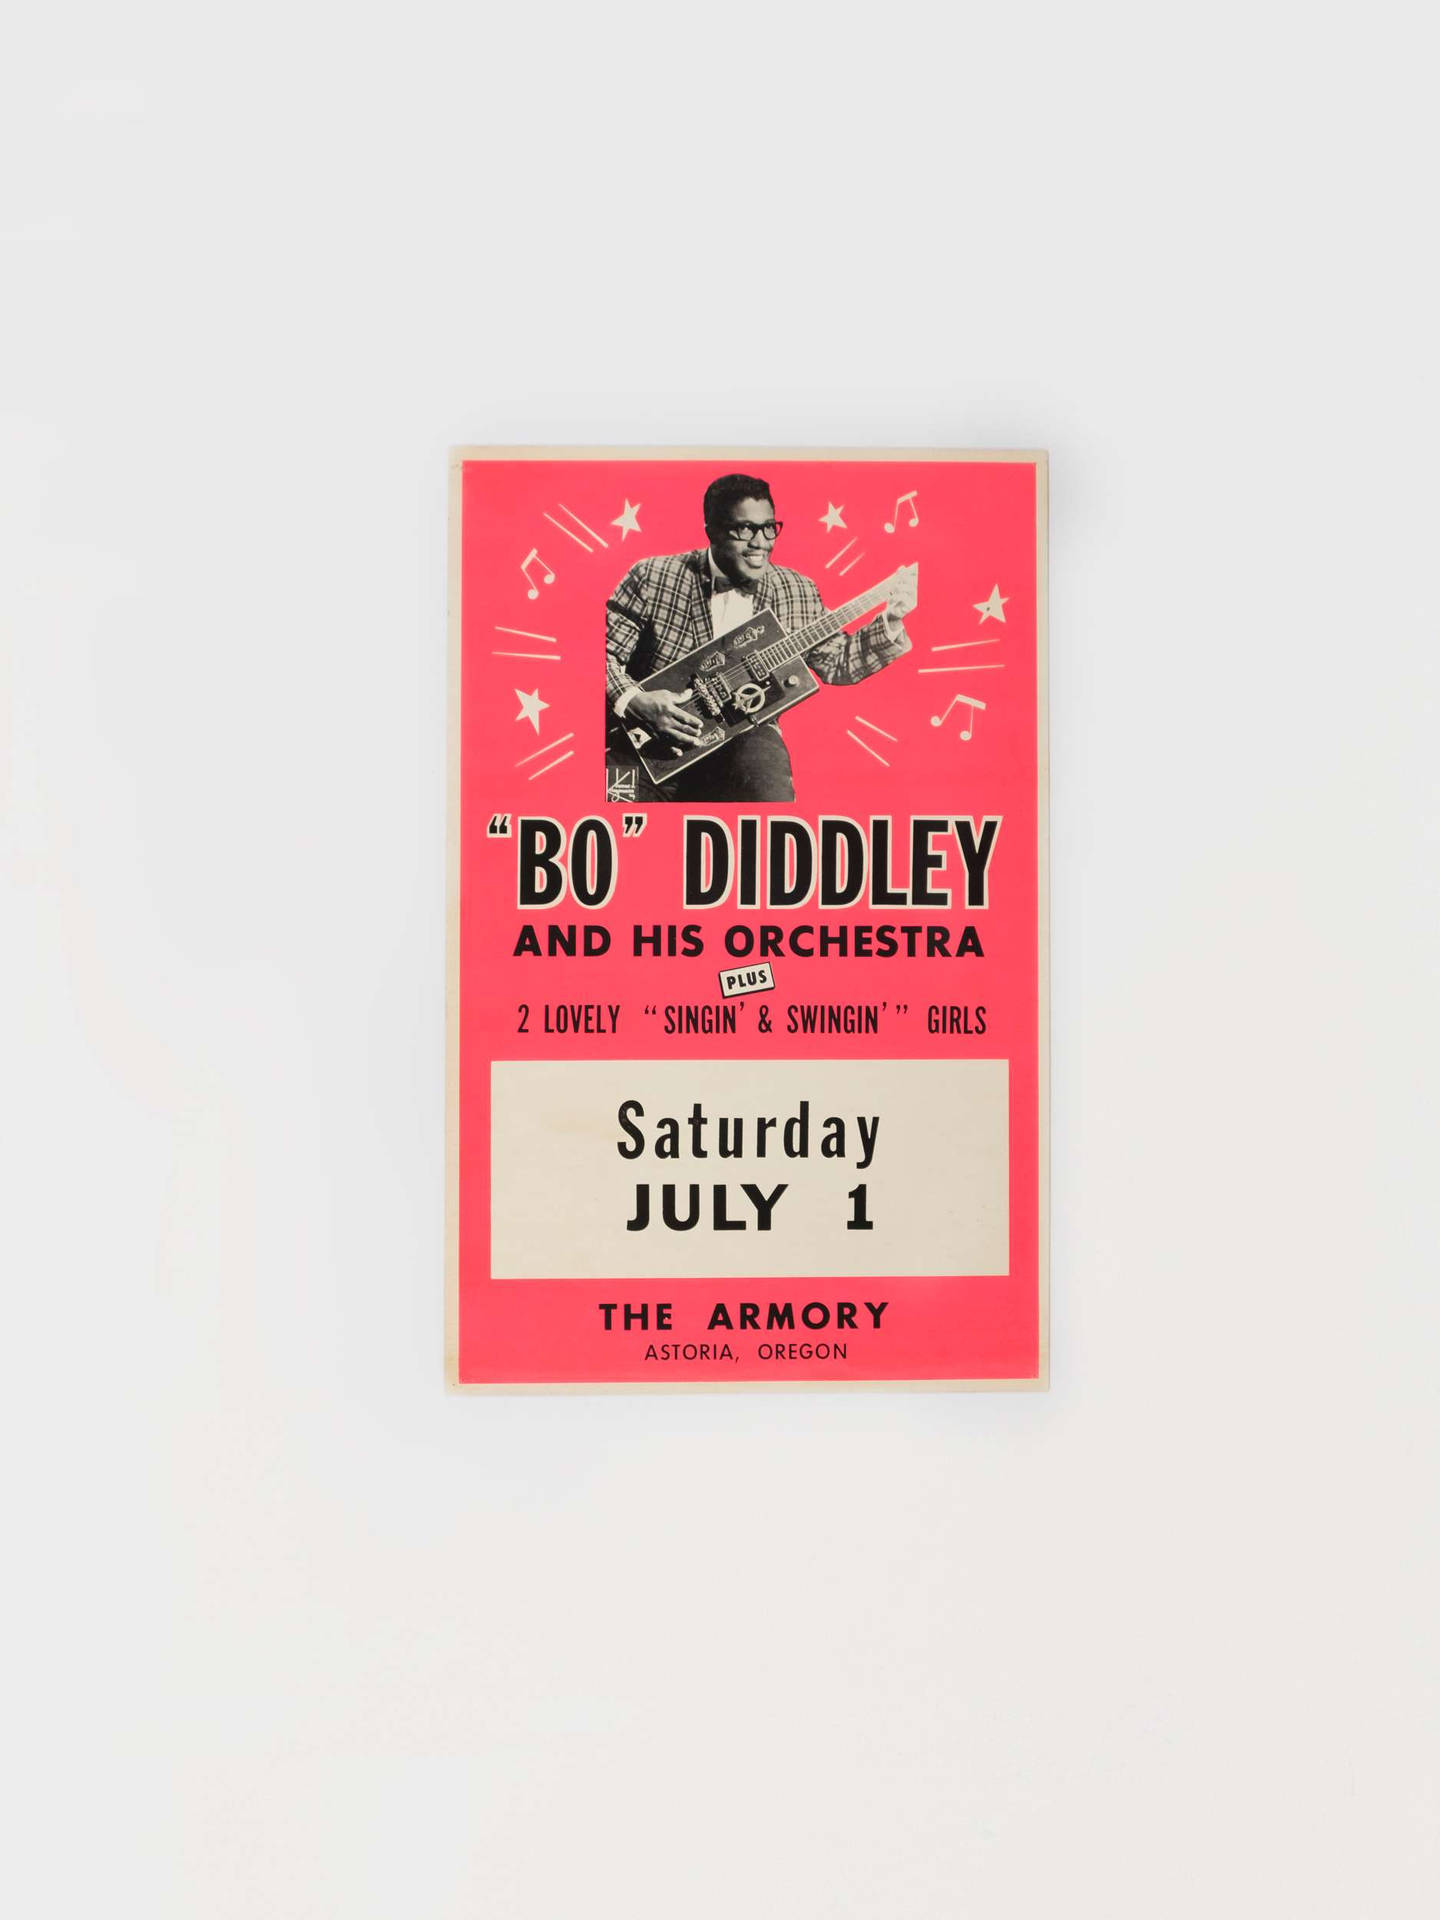 Biljetttill Bo Diddley-konserten Wallpaper